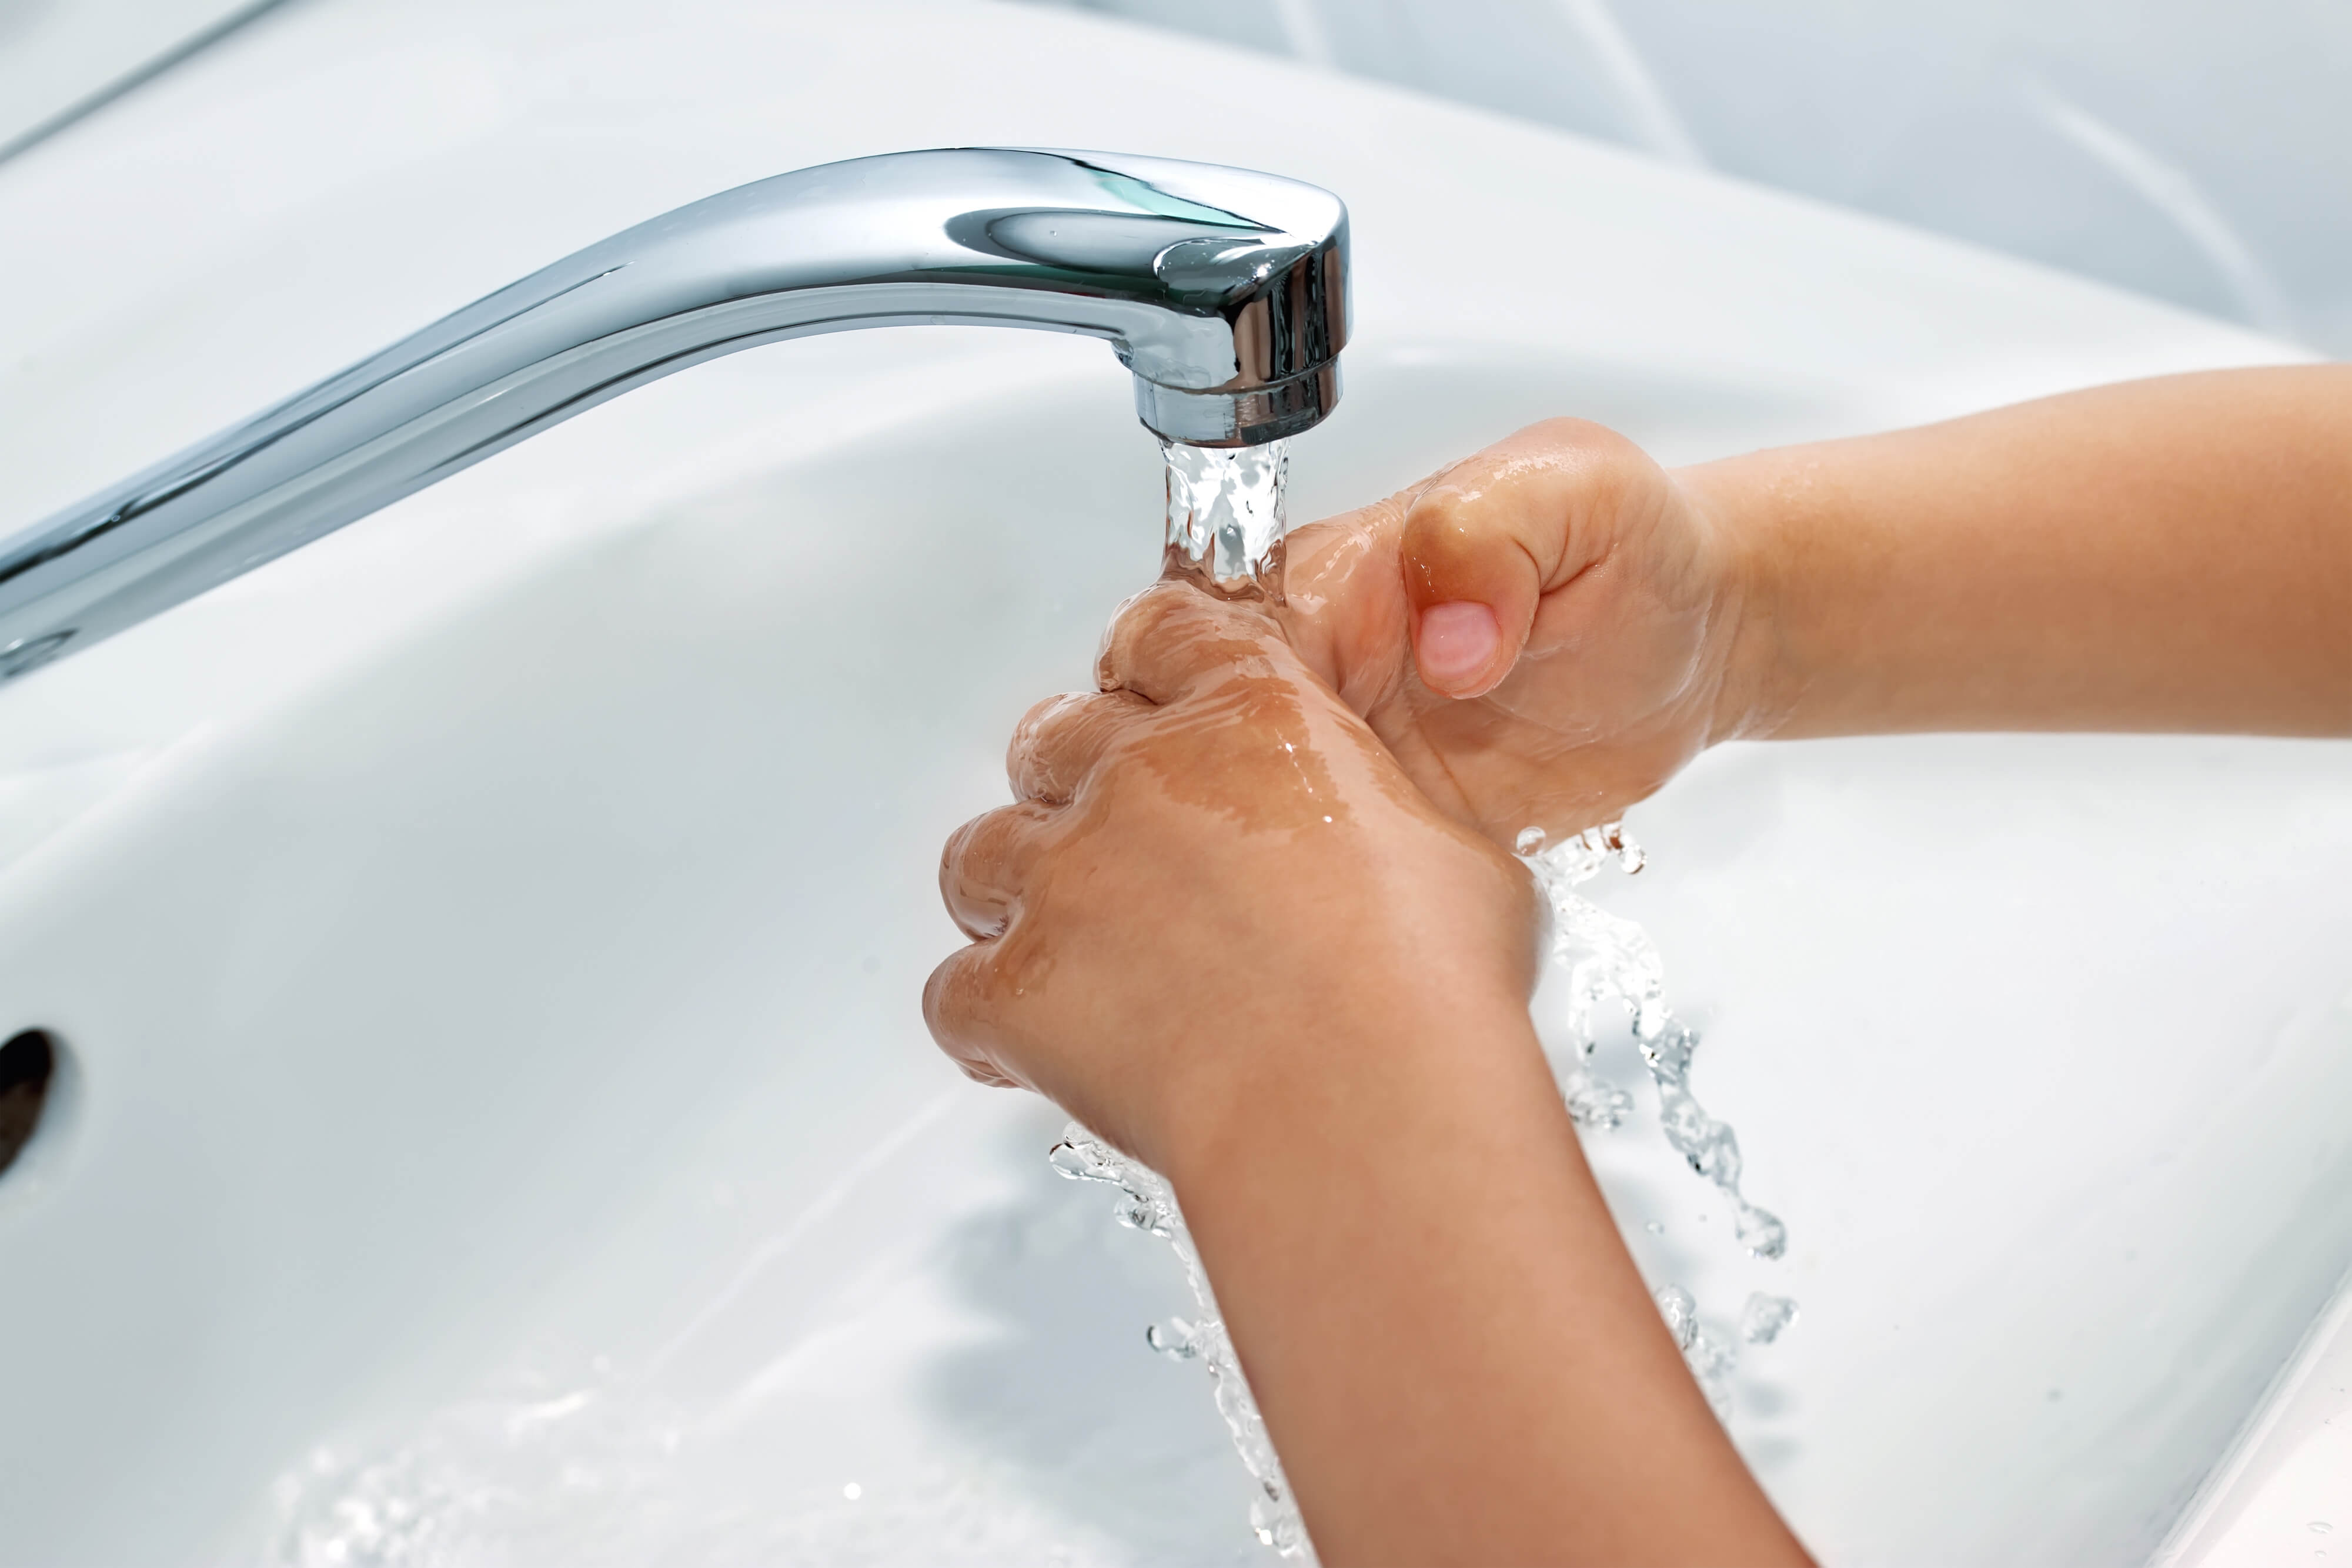 Окр моет руки. Руки под краном с водой. Руки под струей воды. Мытье рук. Мытье рук под краном.